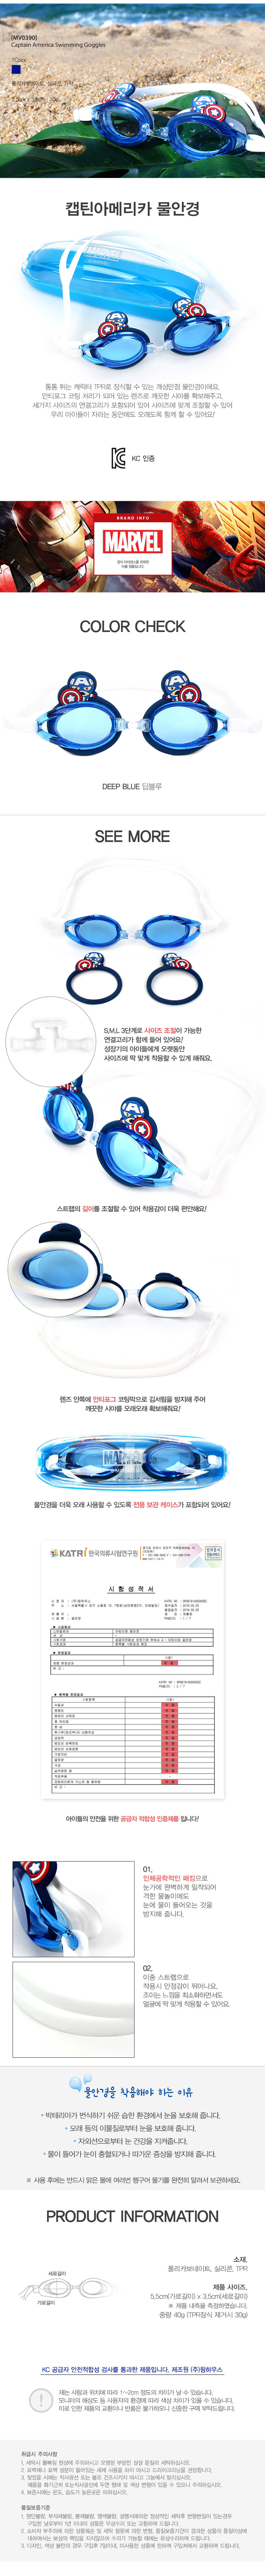 韓國品牌 漫威英雄系列蛙鏡/泳鏡-美國隊長